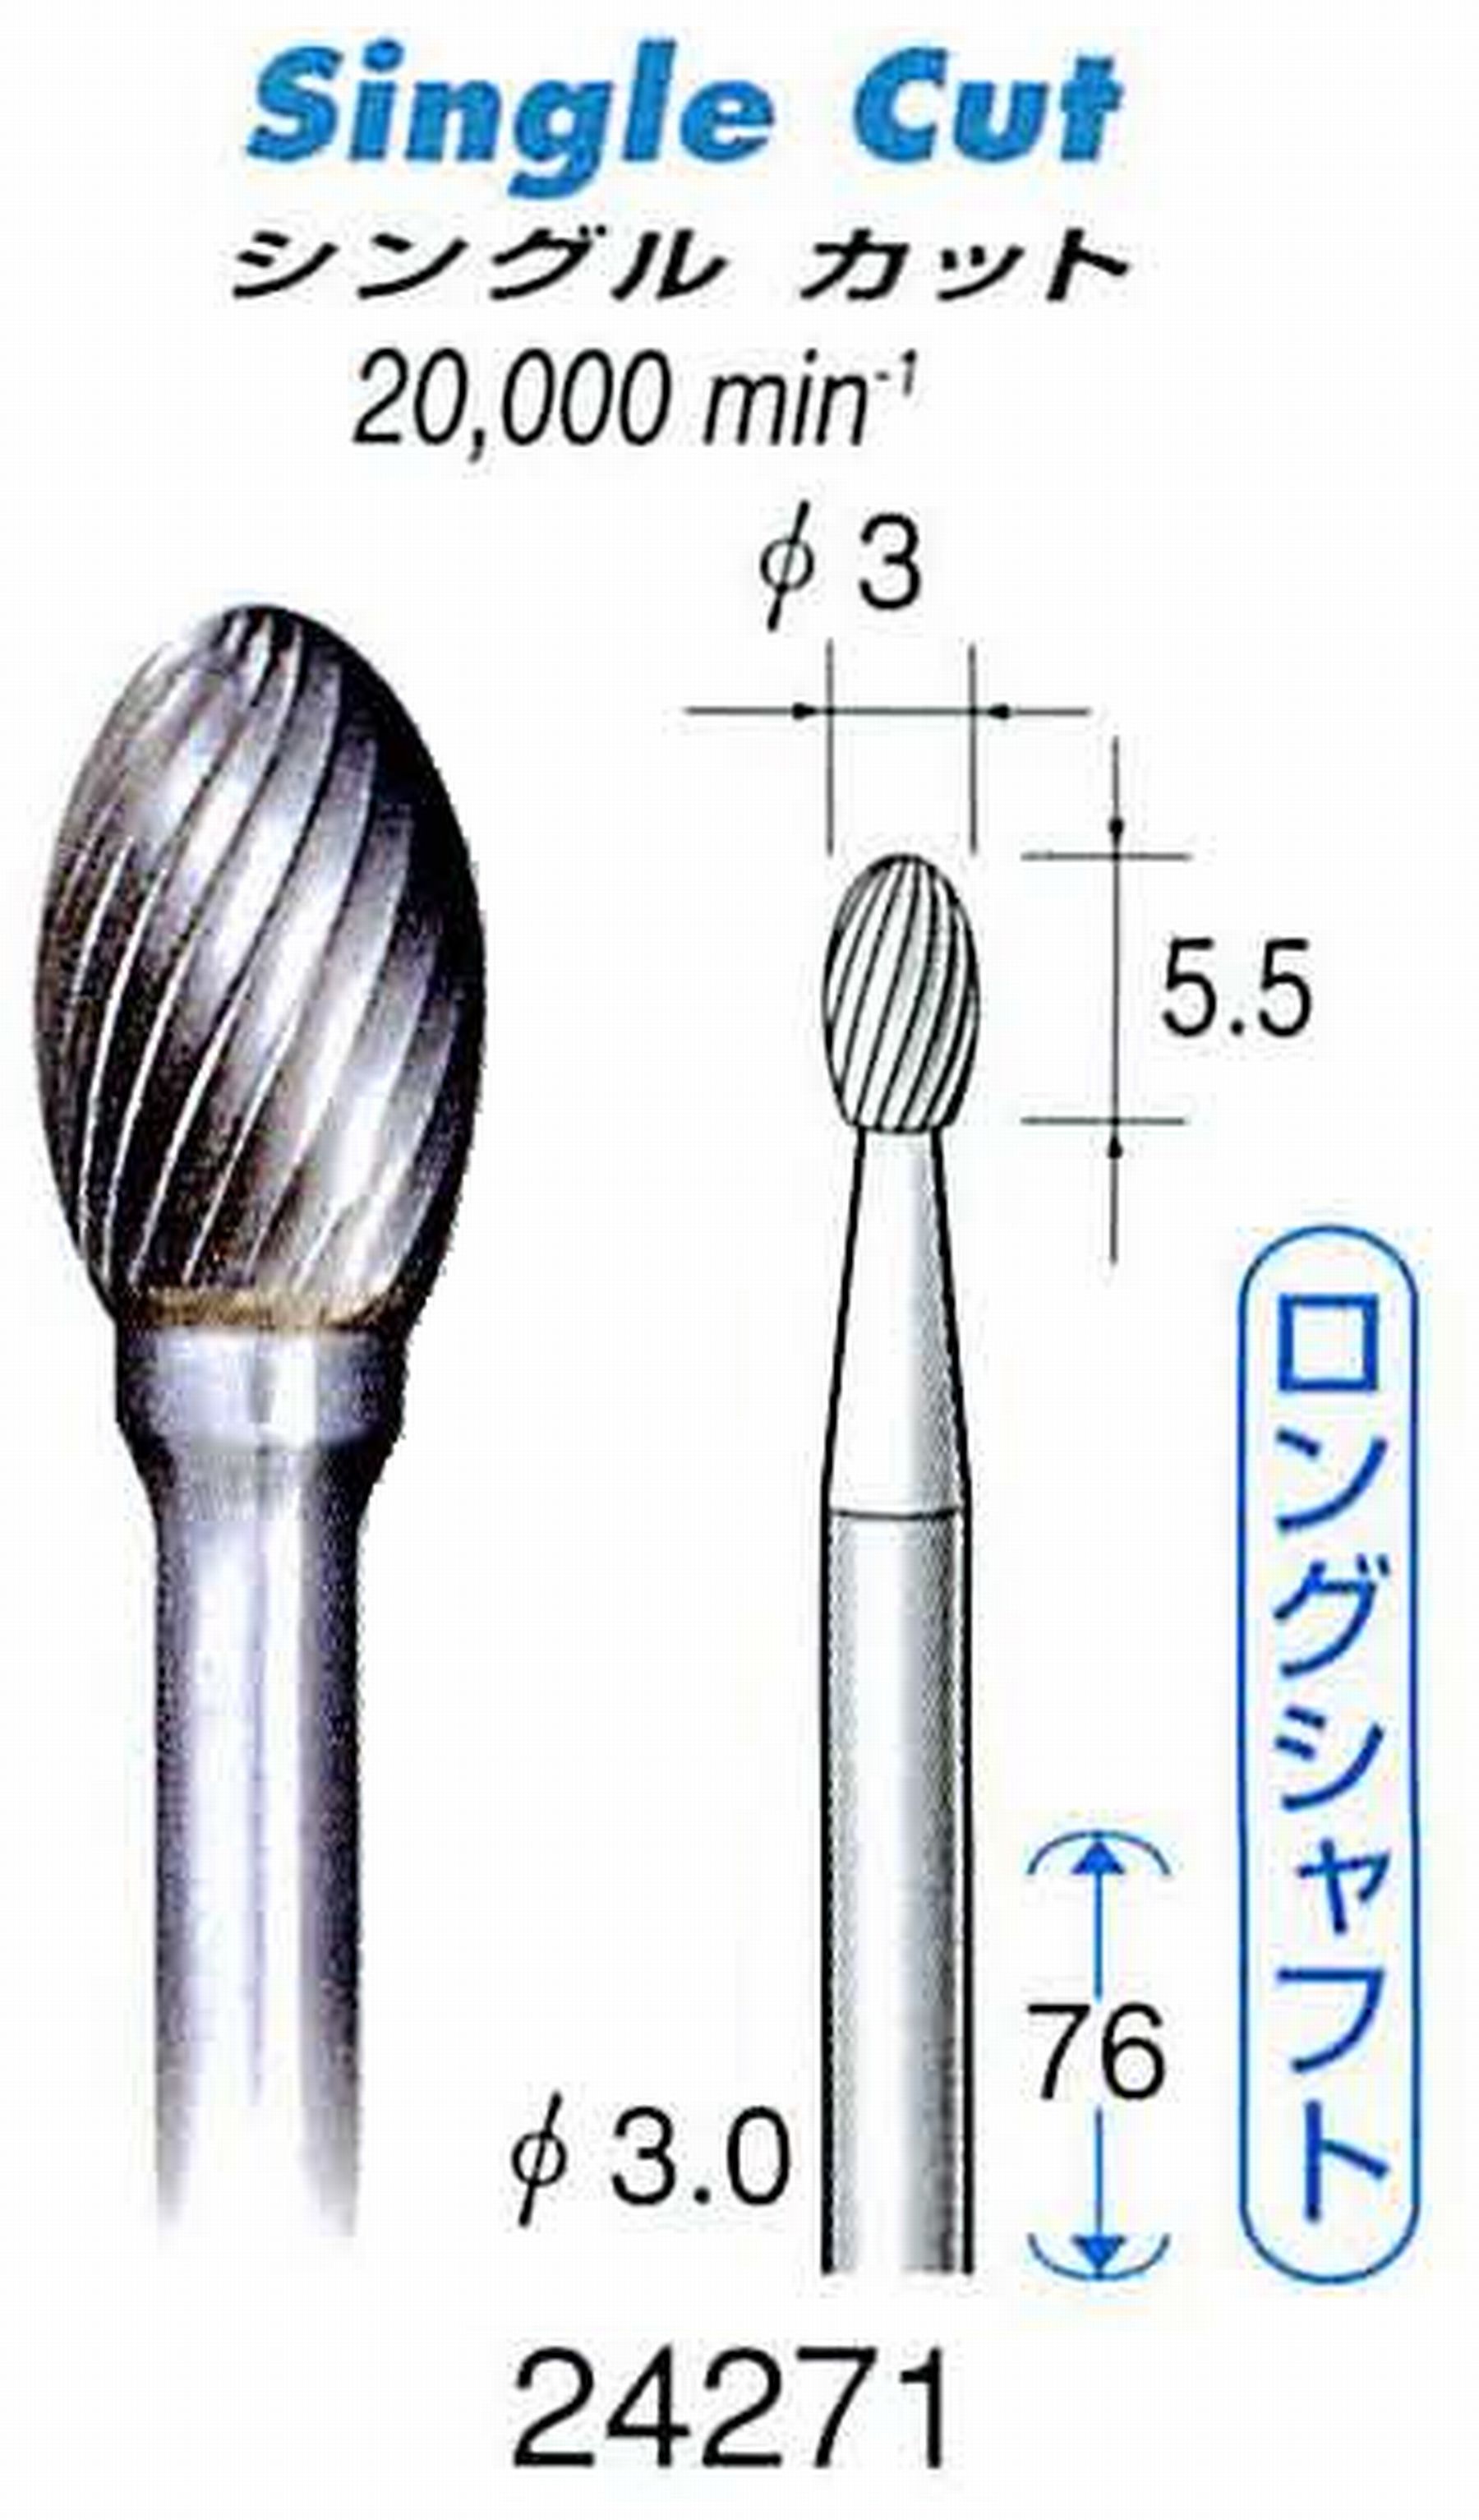 ナカニシ/NAKANISHI 超硬カッター(ロングシャフト) 軸径(シャンク)φ3.0mm 24271